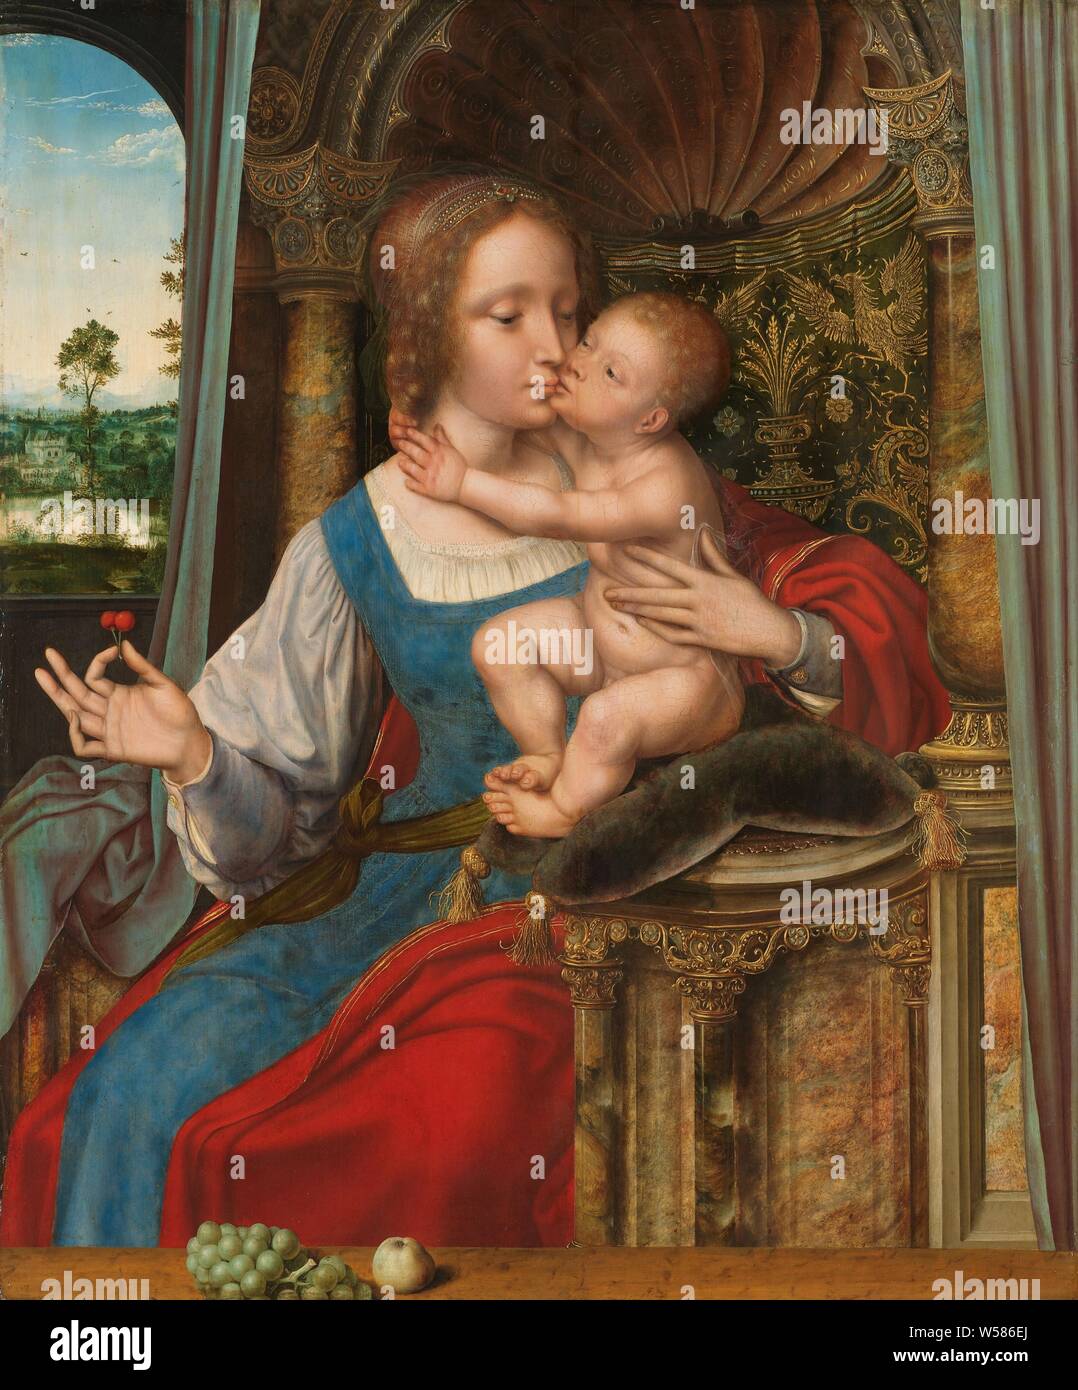 Vierge à l'enfant, Maria avec enfant. Marie est assise sur un trône de marbre ornemental et embrasse l'enfant Jésus qui est assis sur un coussin sur un piédestal à côté d'elle. L'enfant a mis ses bras autour du cou de sa mère. Maria a deux cerises dans sa main droite, avec des raisins et une pomme sur la balustrade au premier plan. Vue d'un paysage à travers la fenêtre sur la gauche., Quinten Massijs (I) (atelier de), ch. 1525 - c. 1530, tableau de bord, de la peinture à l'huile (peinture), support : h 75,4 cm × w 62,9 cm taille de la vue : H 75 cm sightsize : w 62 cm section : h 110 cm × w 96,5 cm Banque D'Images